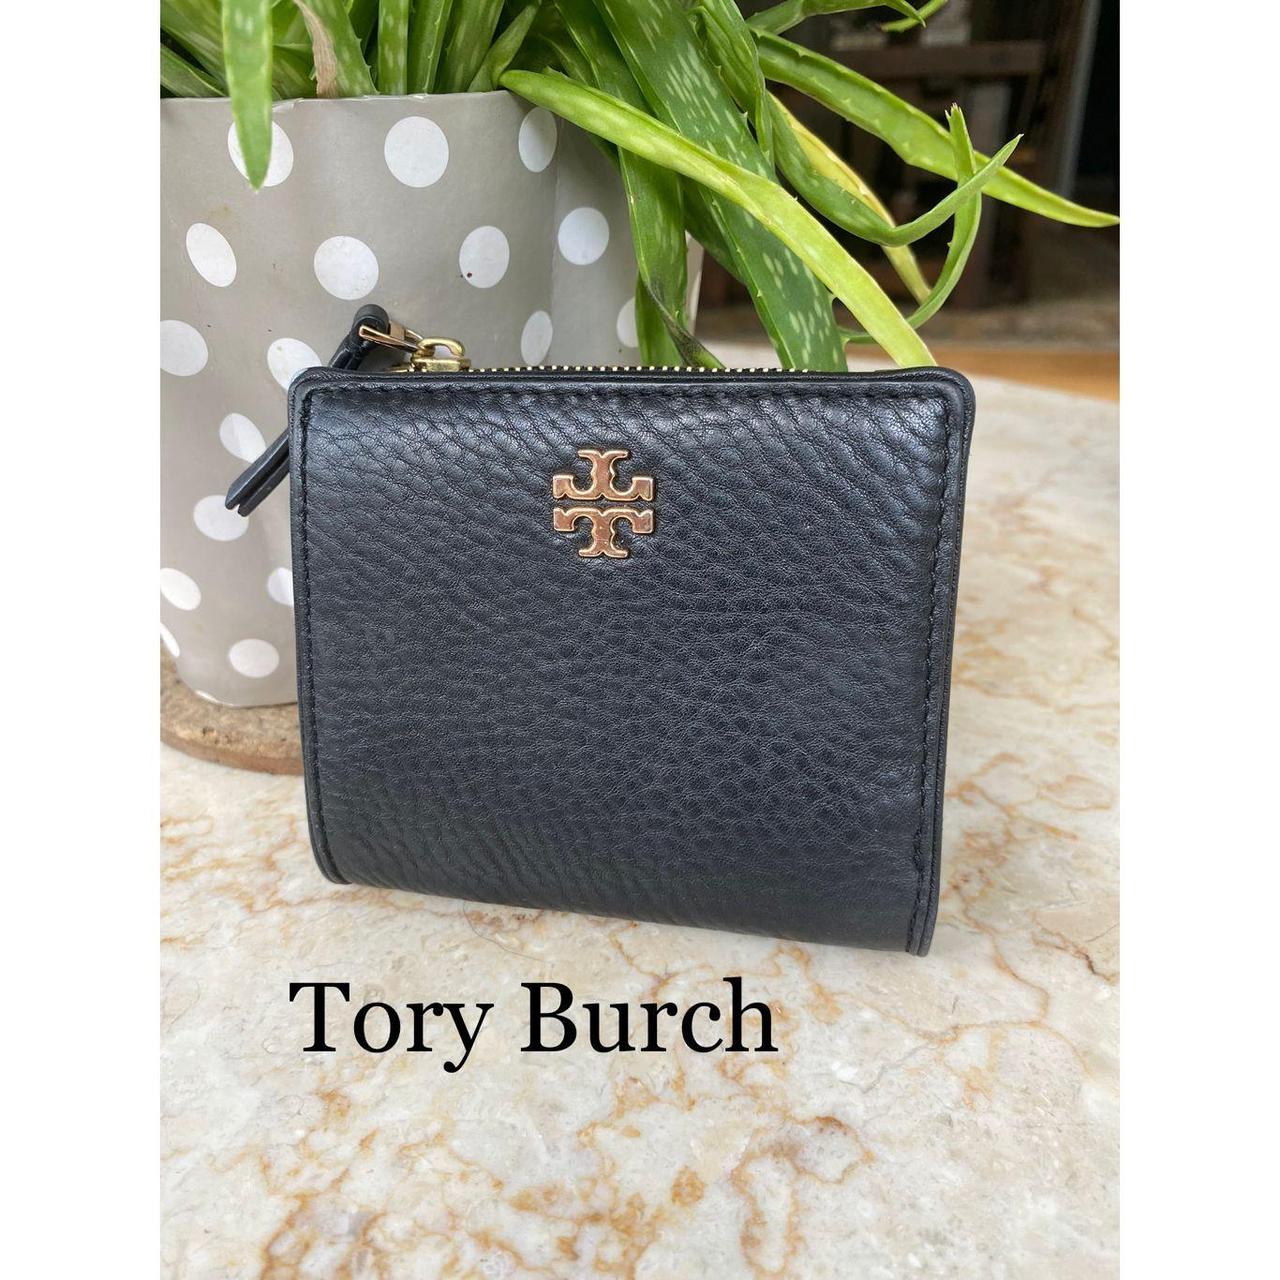 Tory Burch Women's Black Wallet-purses | Depop